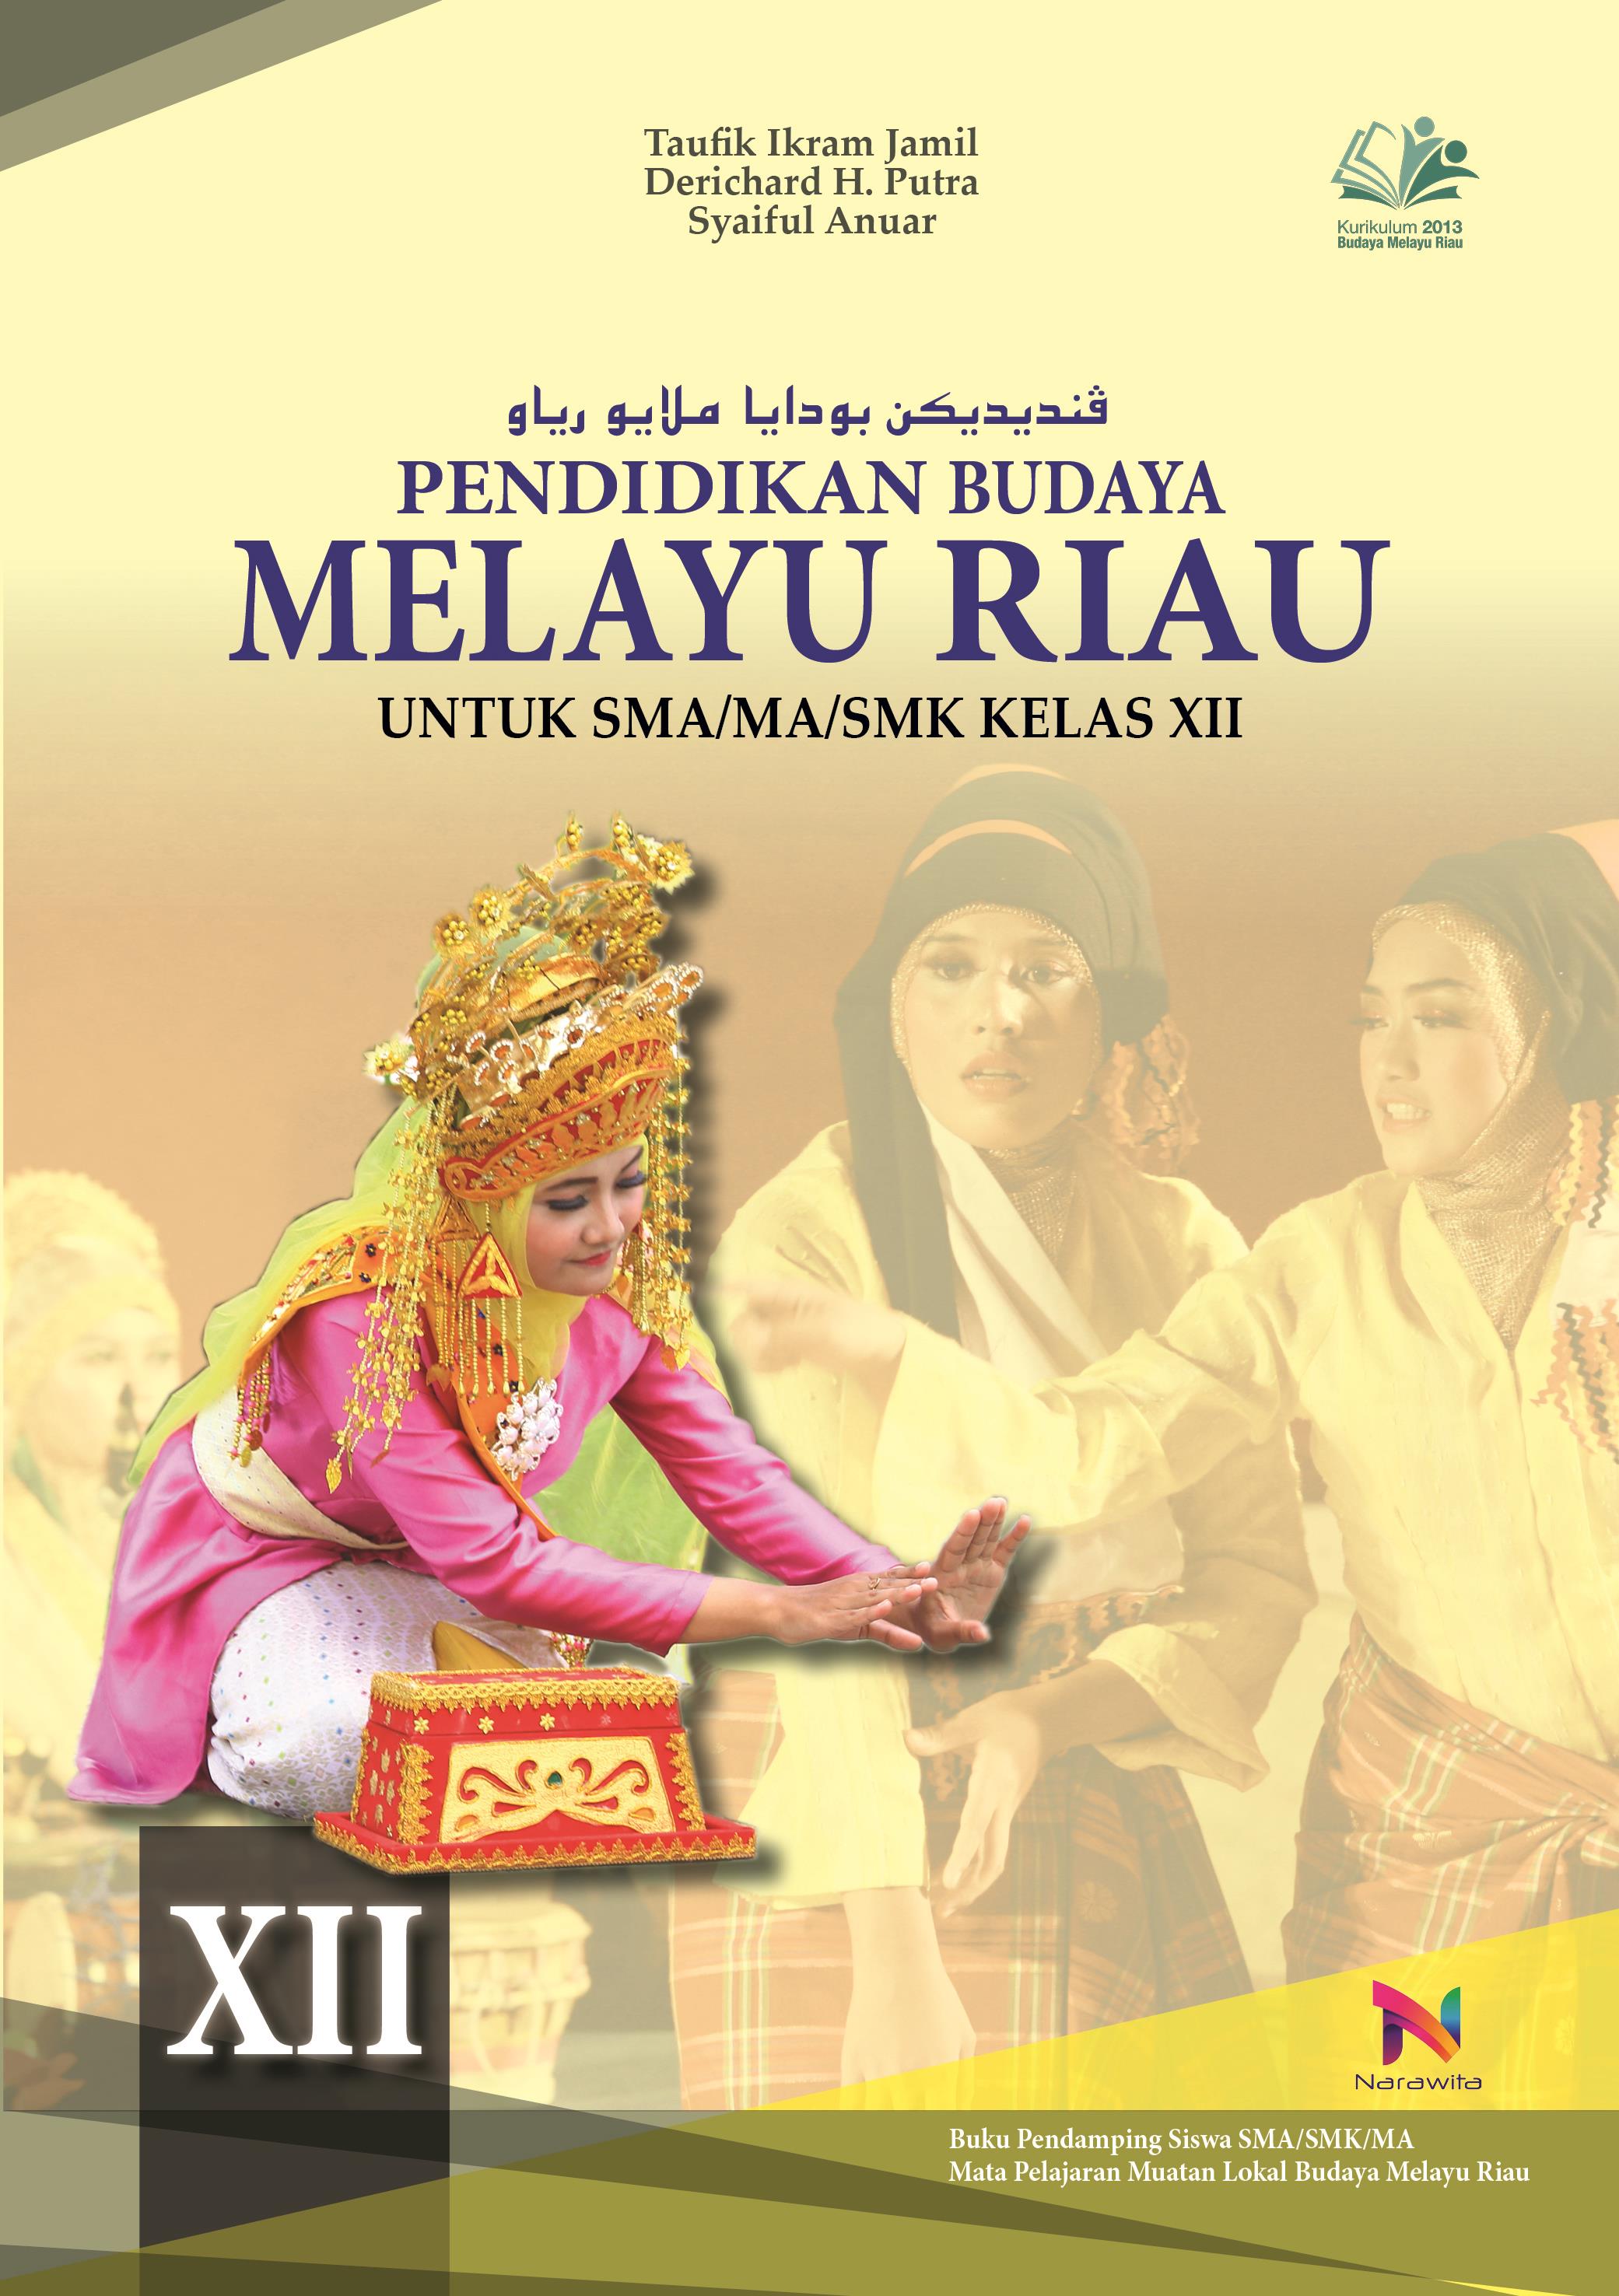 Rpp Budaya Melayu Riau Kelas 3 / Buku Budaya Melayu Riau Kelas 4